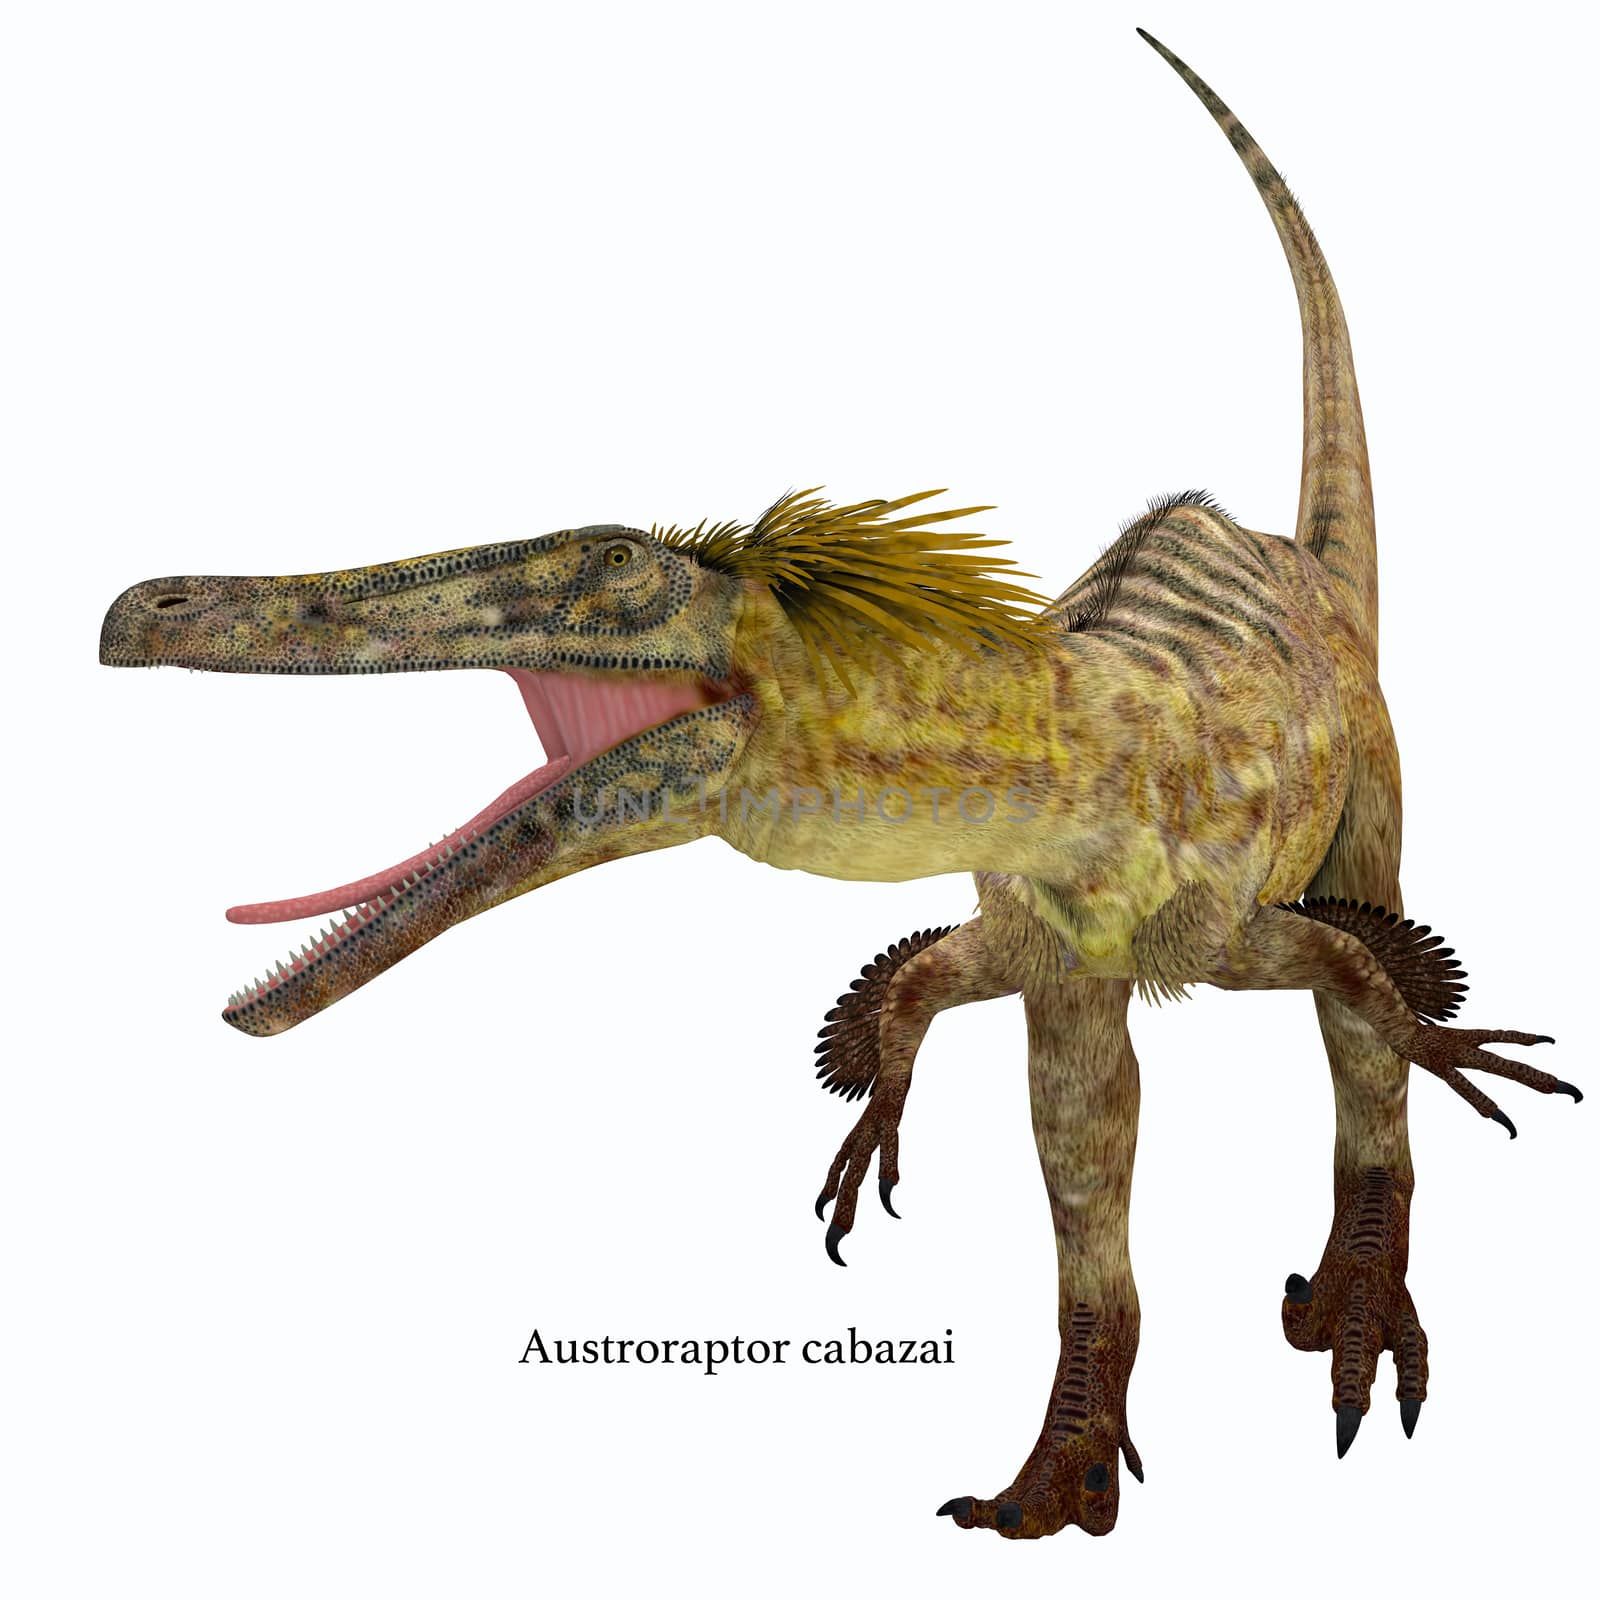 Austroraptor Dinosaur on White by Catmando